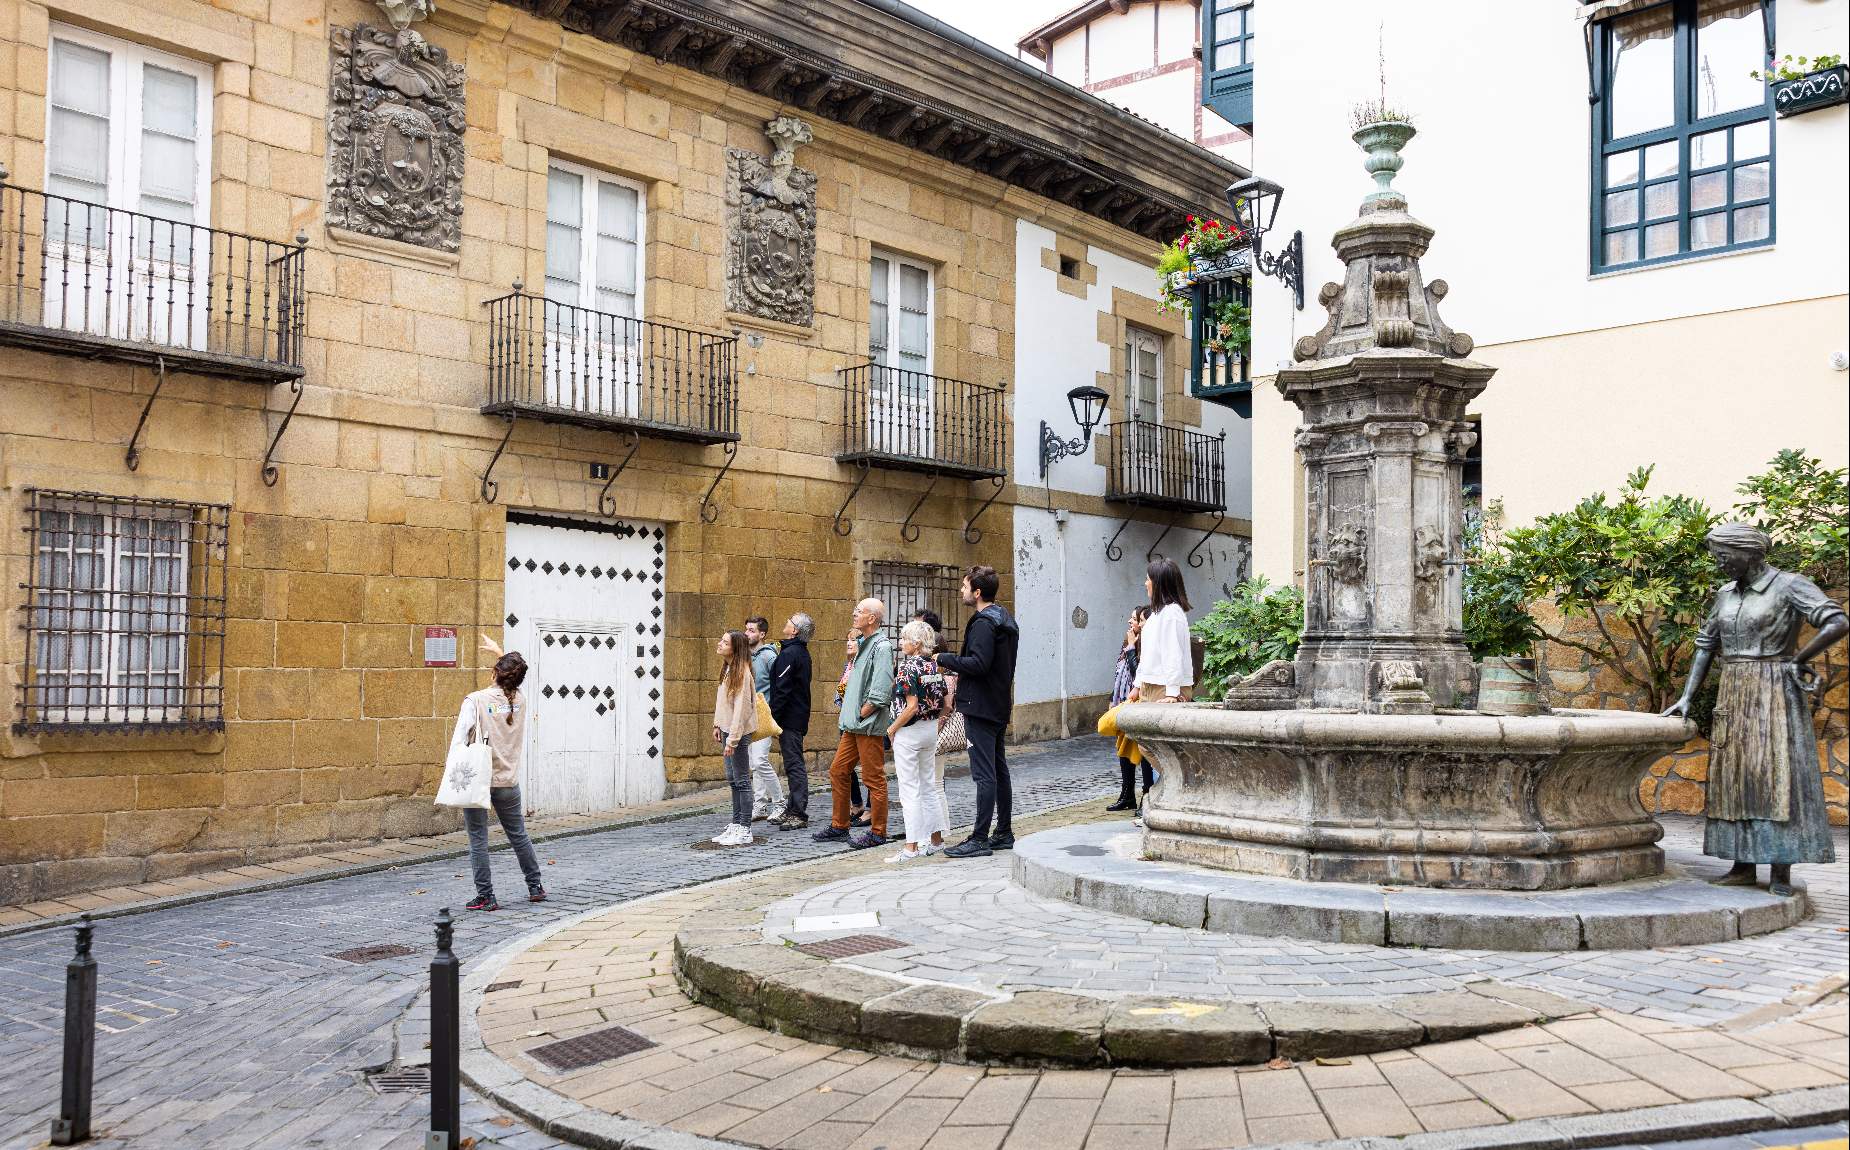 Turistas visitando una plaza de un pueblo con una fuente 